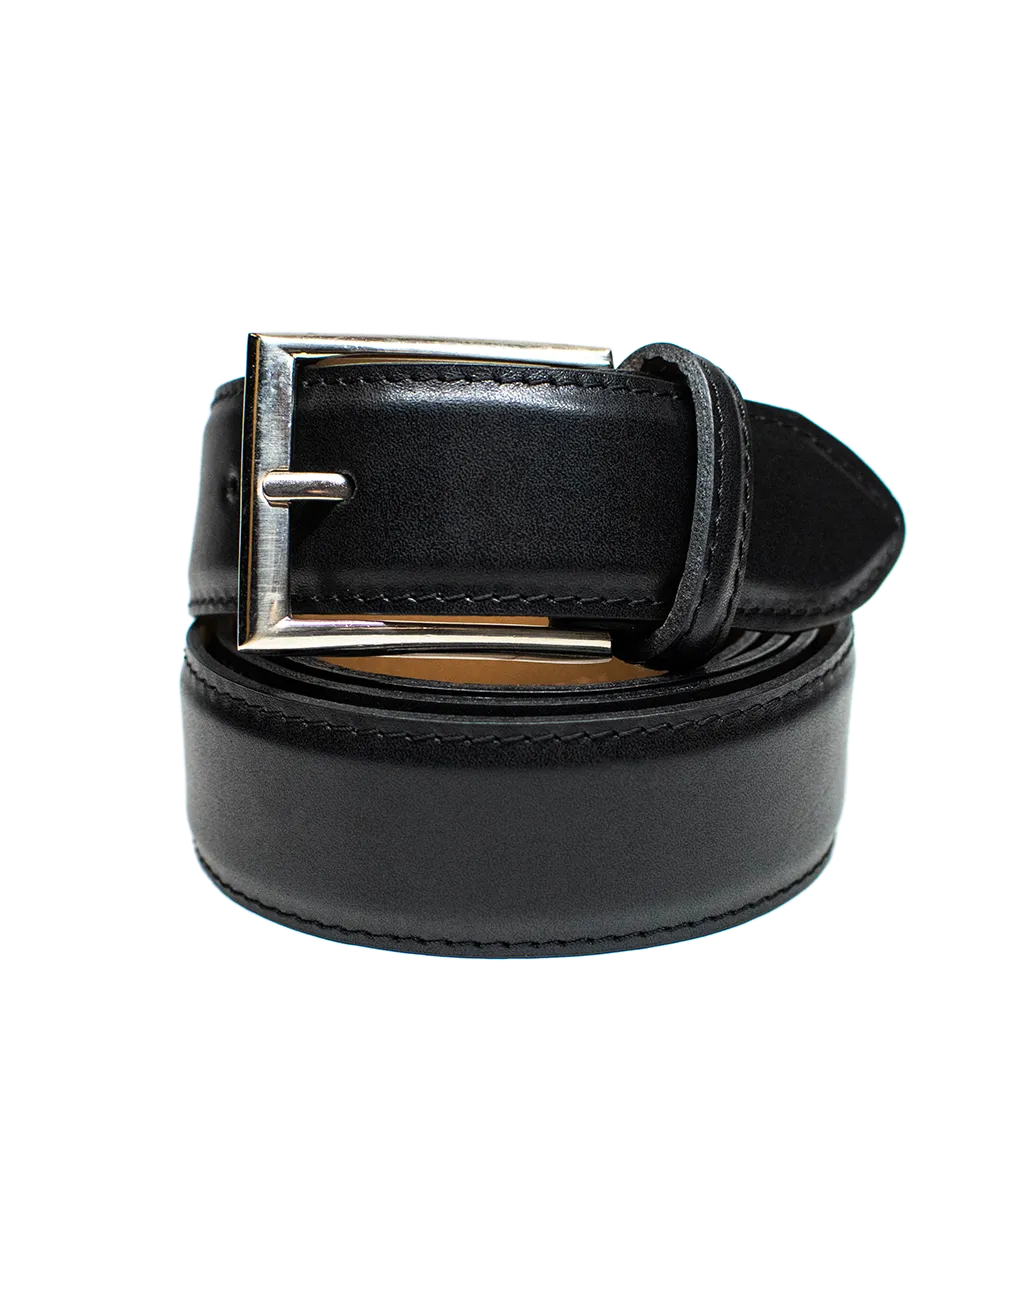 Cinturón clásico en color negro